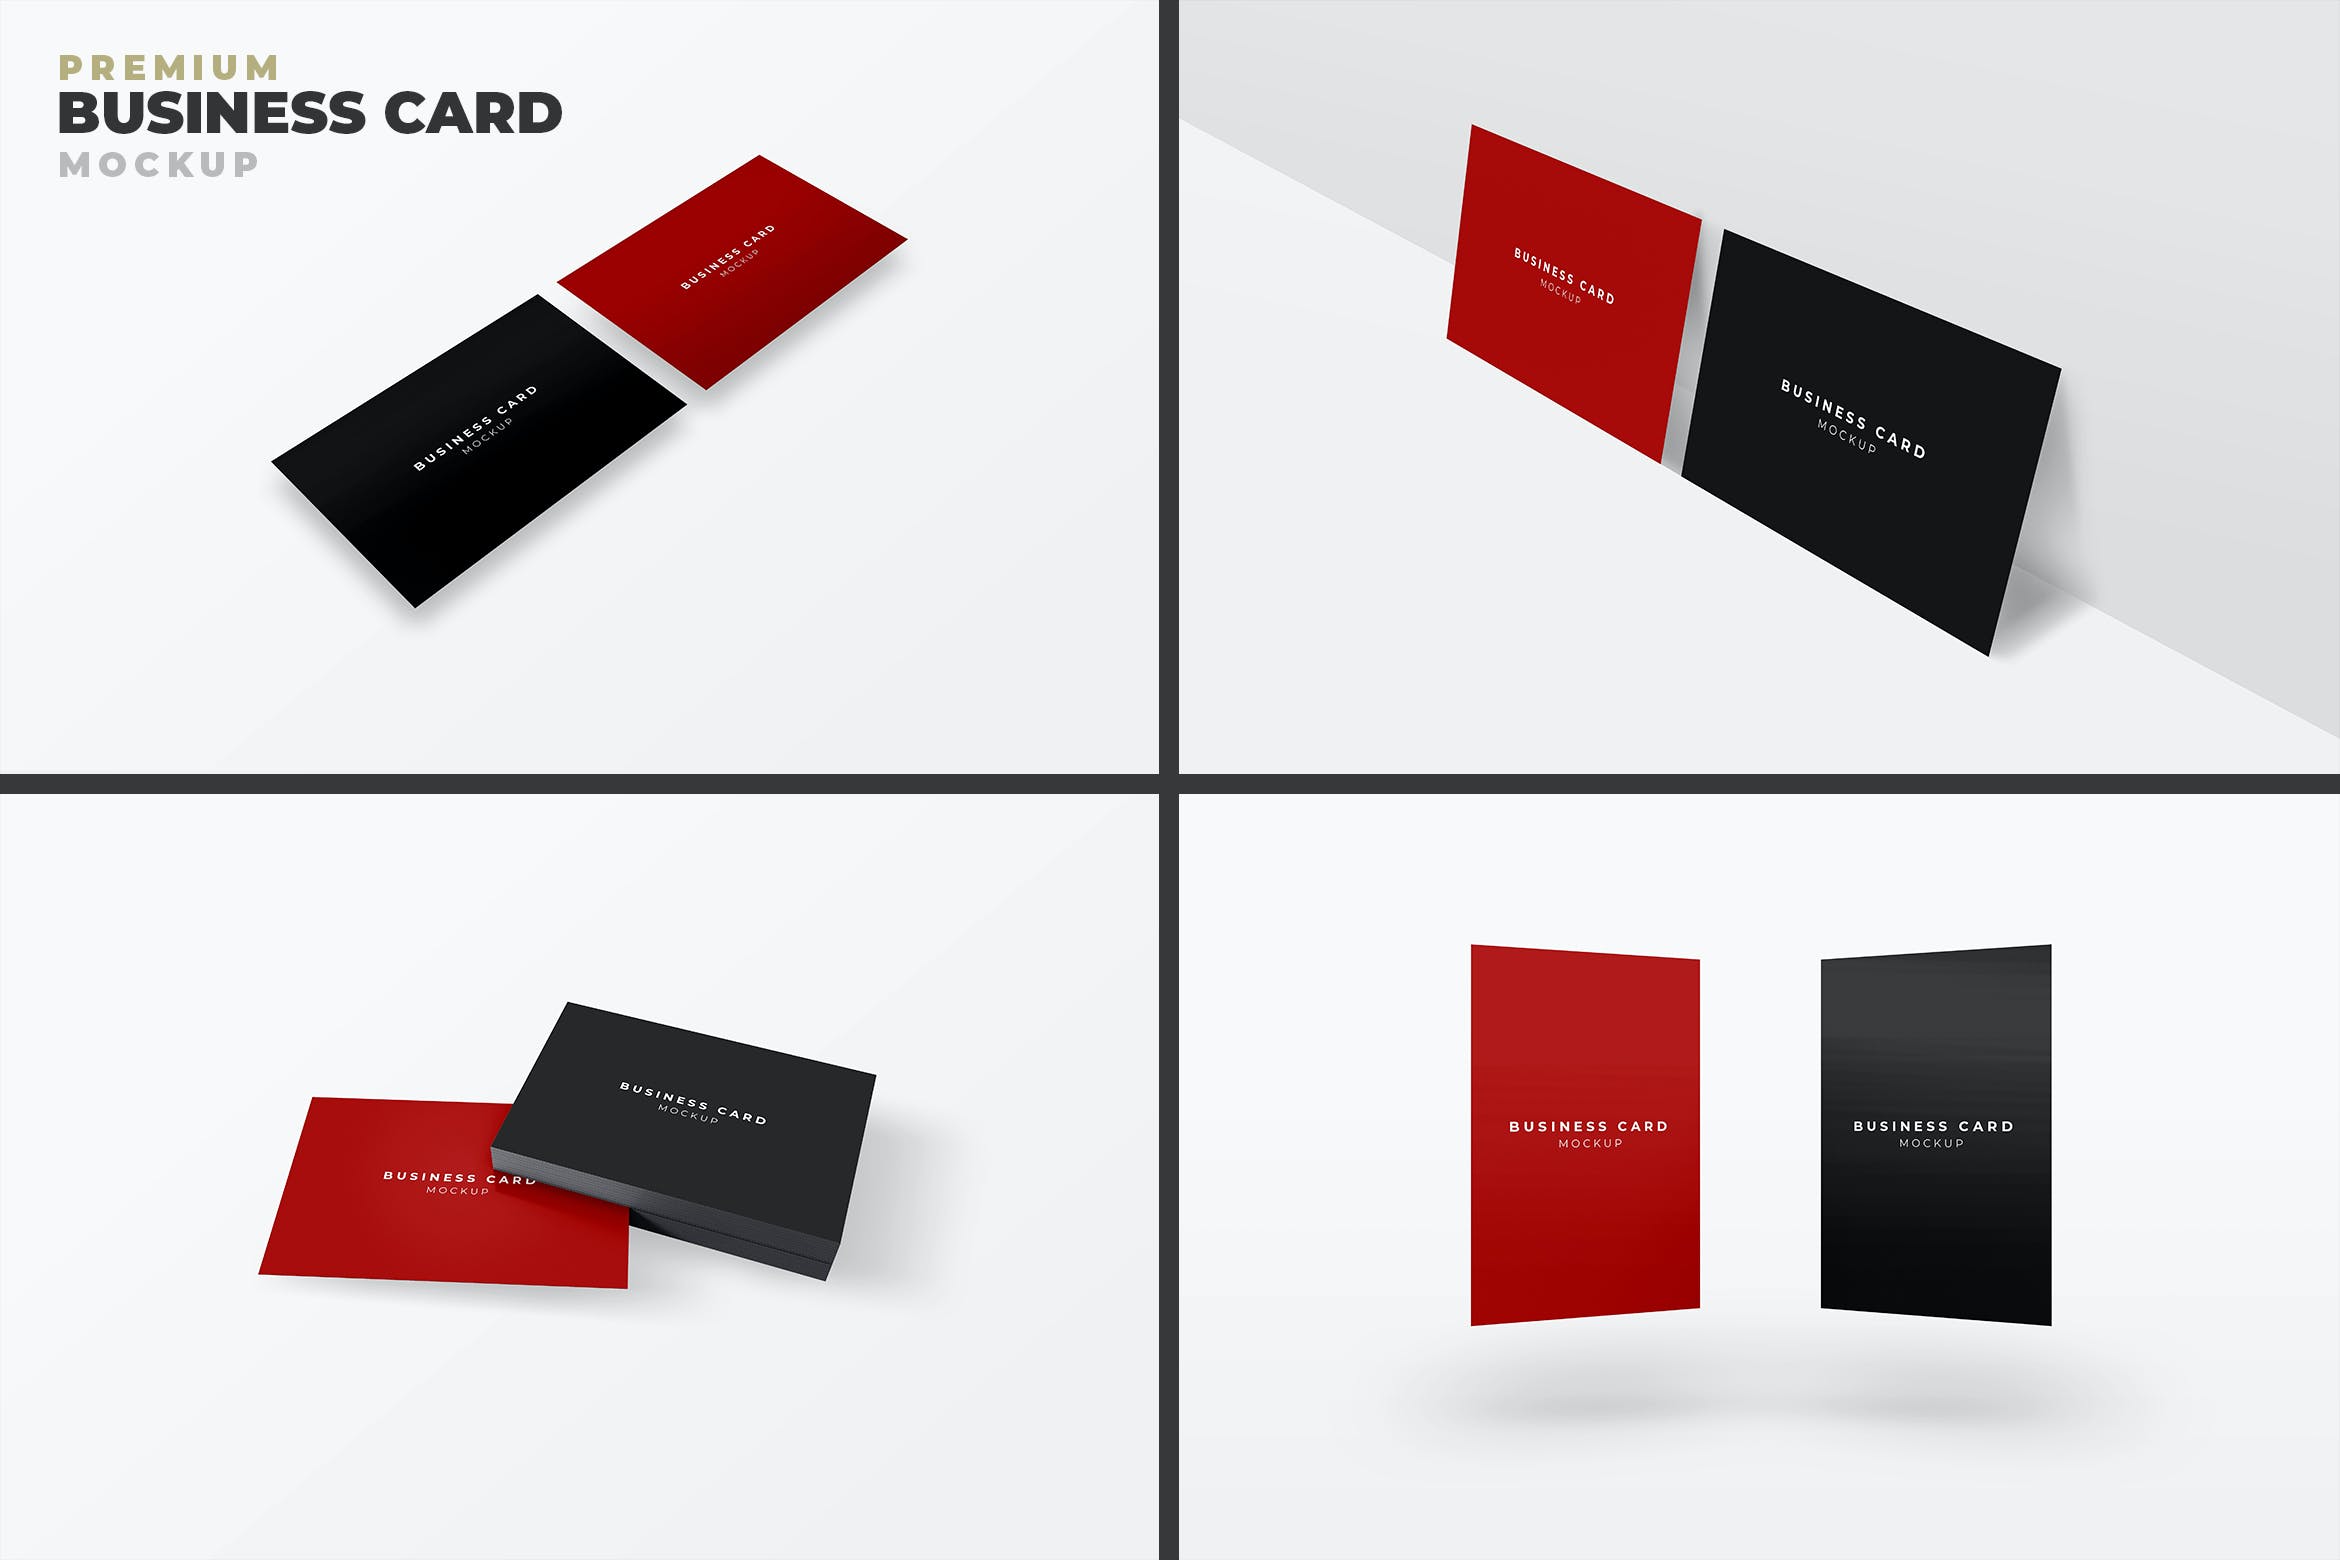 企业名片透视设计效果图样机模板v23 Business Card Mockup设计素材模板